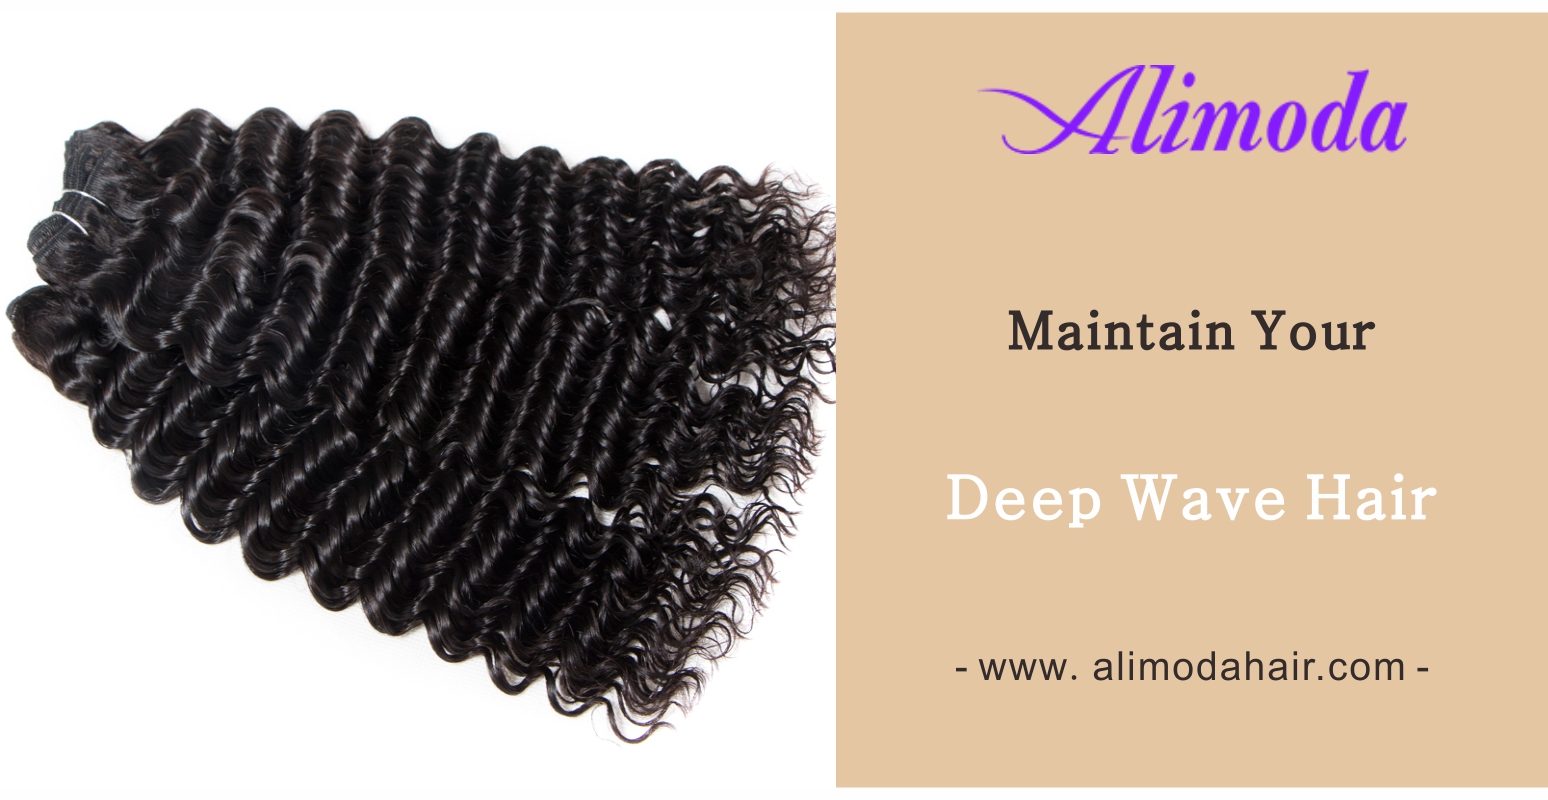 Maintain your deep wave hair